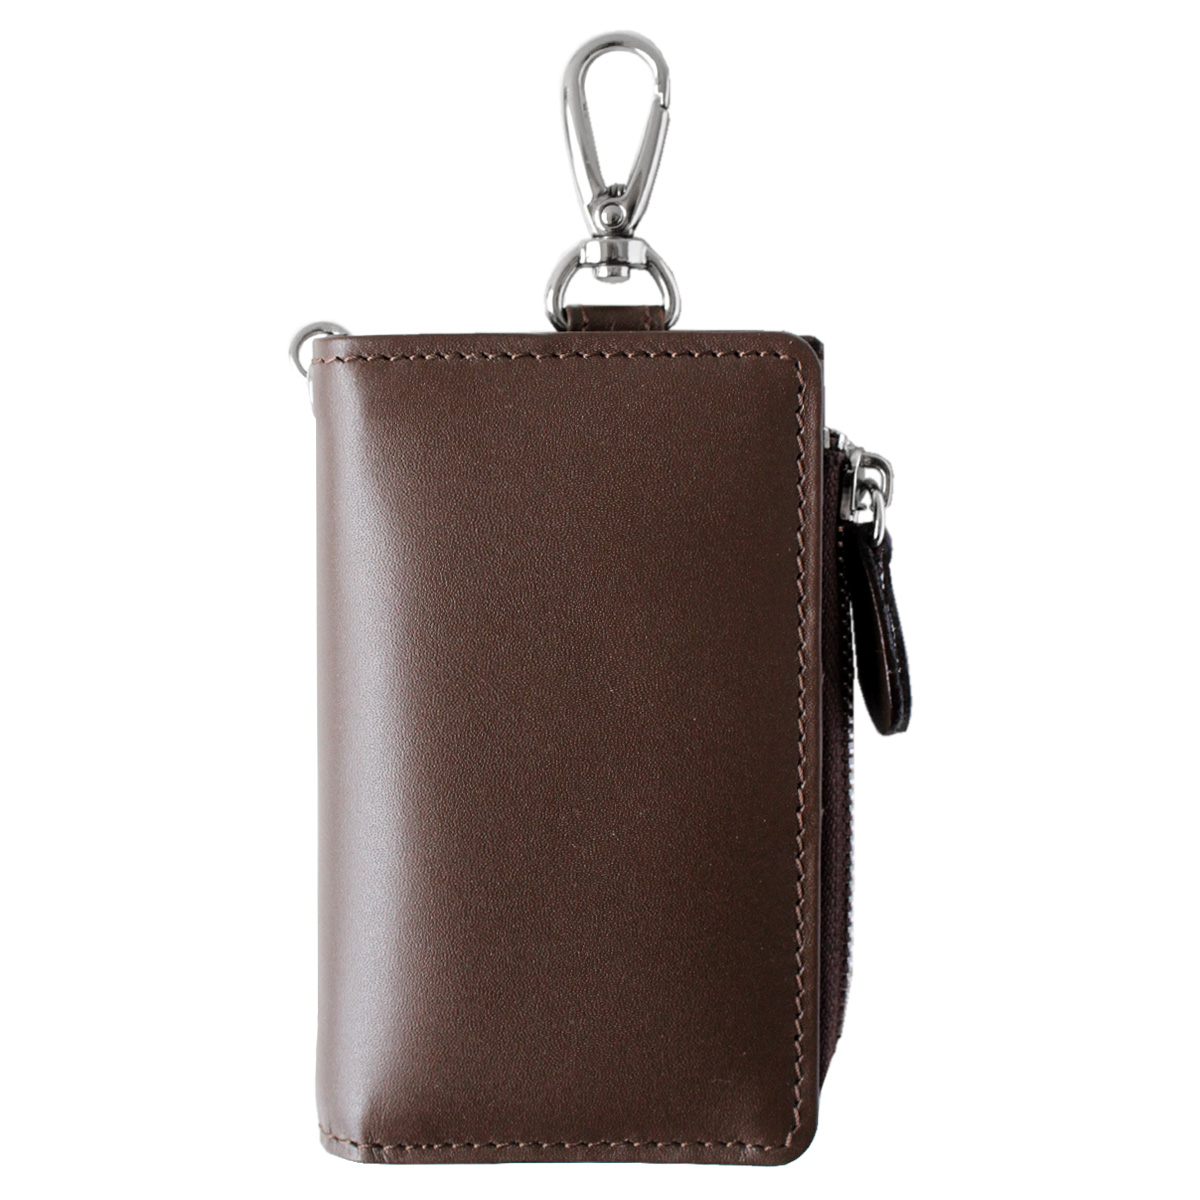 キーケース メンズ レディース 本革 レザー L字ファスナー キーケース財布一体型 小銭入れ カードケース コインケース ミニ財布